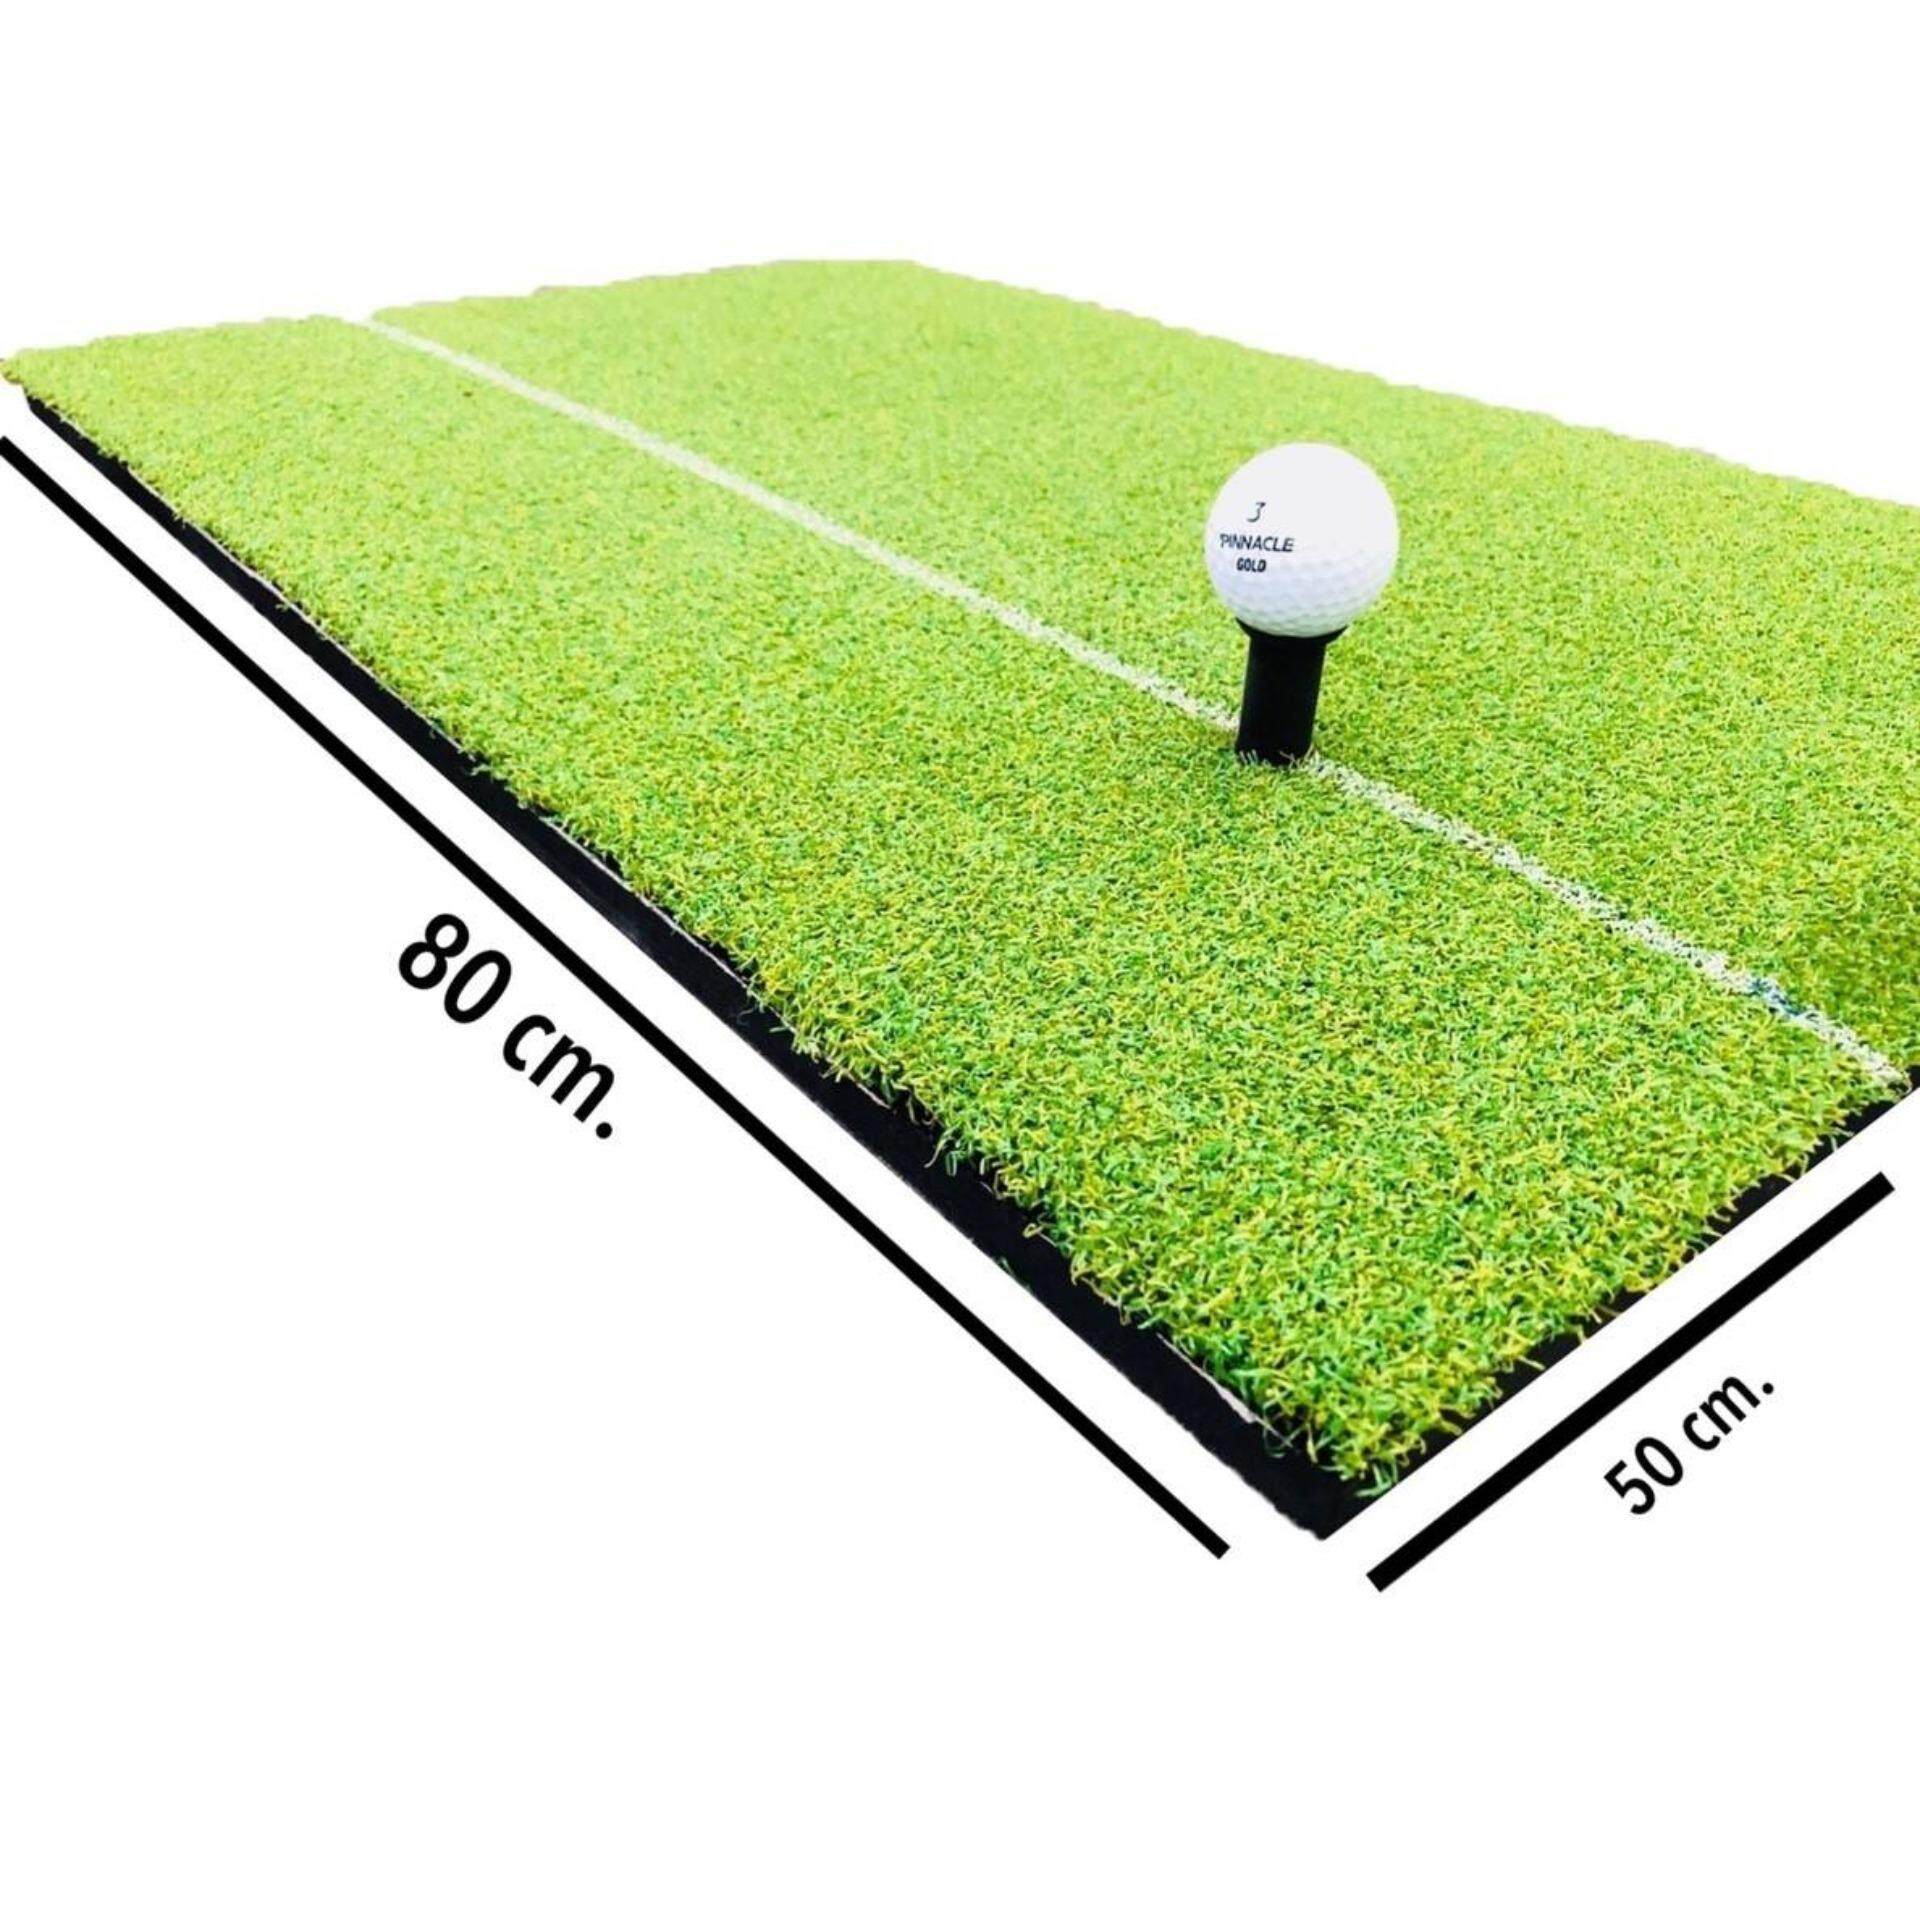 2Brother 50x80 cm พรมหญ้าเทียมซ้อมกอล์ฟหญ้าเทียมเรียบทั้งผืนขนาด 50x80 ซม.,แผ่นพรมสำหรับซ้อมกอล์ฟ หนา 31 มม.